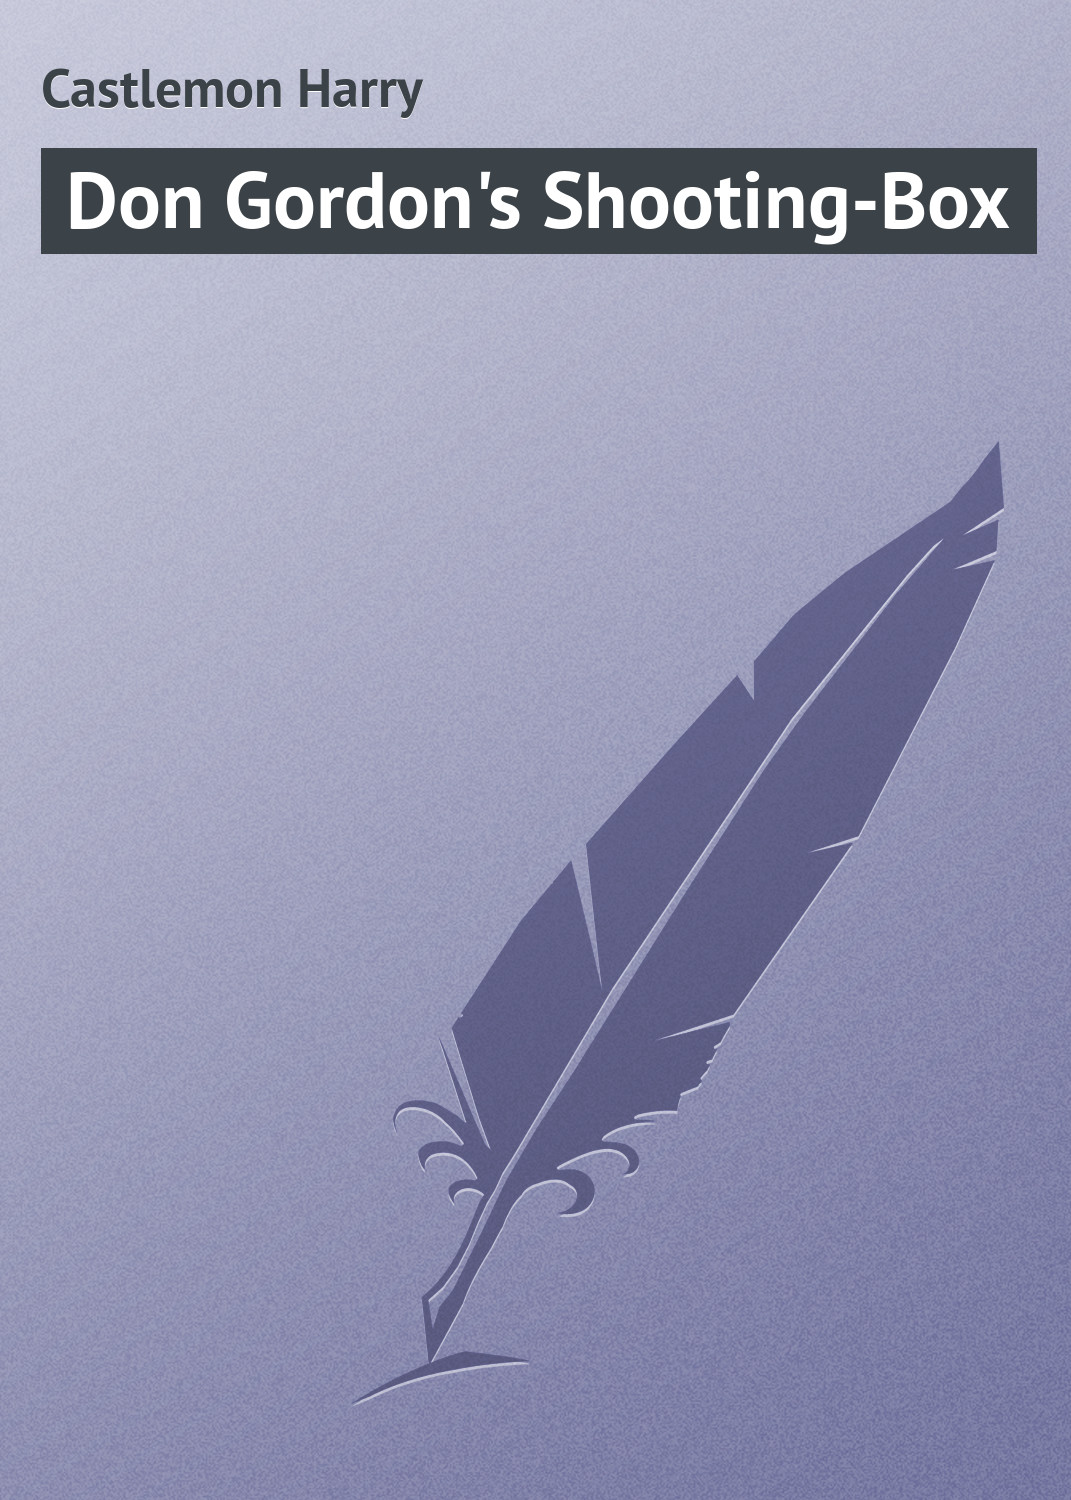 Книга Don Gordon's Shooting-Box из серии , созданная Harry Castlemon, может относится к жанру Зарубежная классика. Стоимость электронной книги Don Gordon's Shooting-Box с идентификатором 23165531 составляет 5.99 руб.